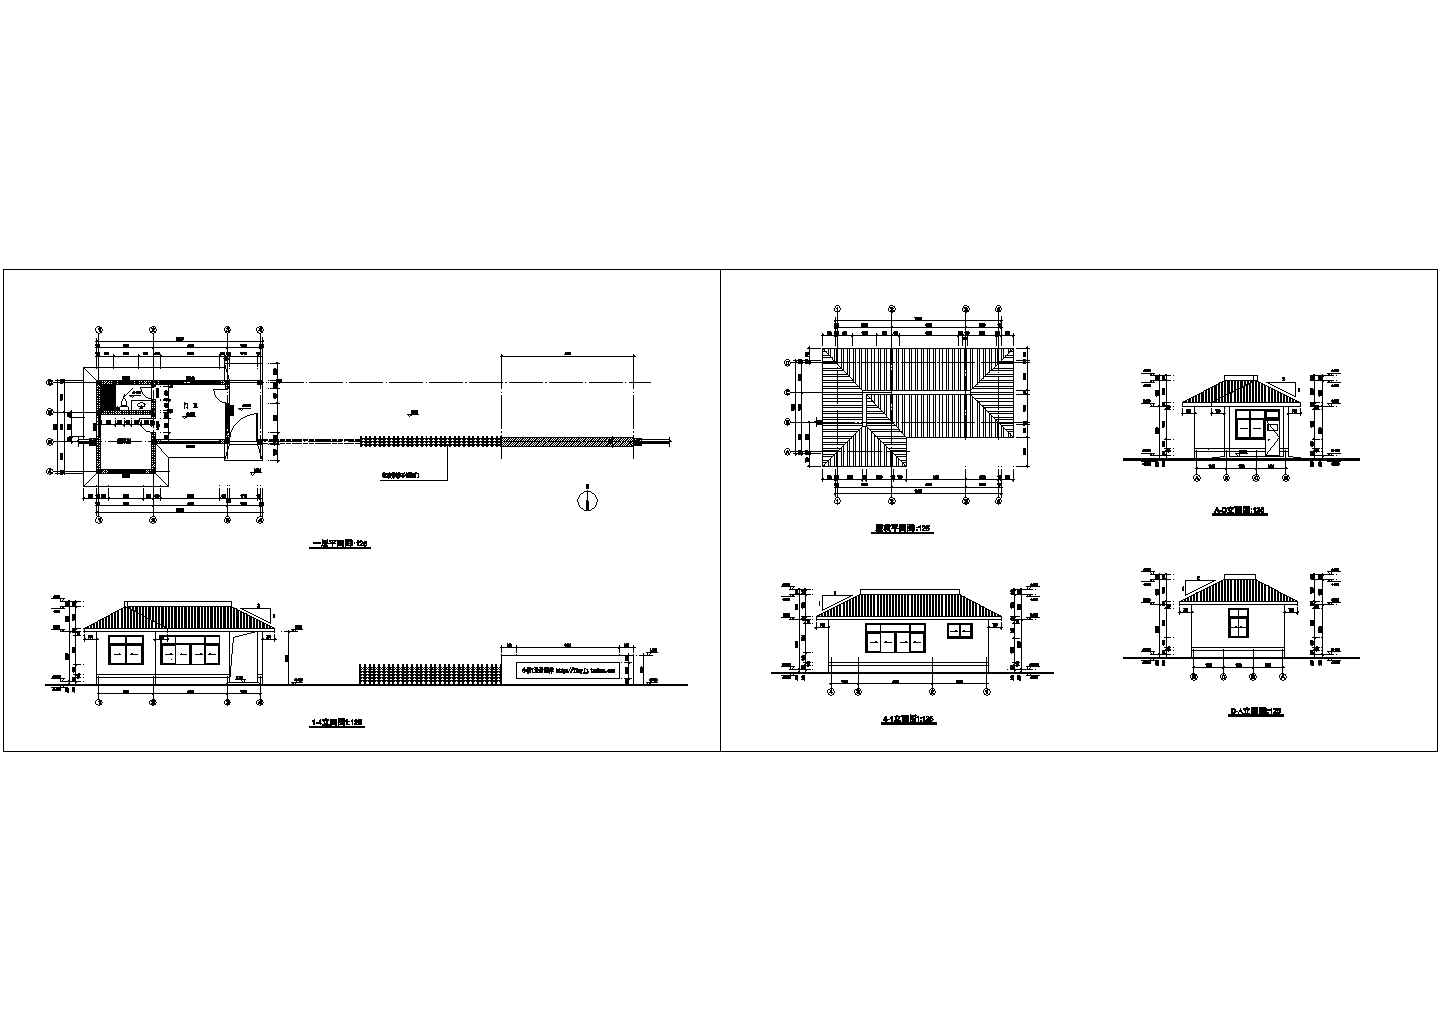 长33米 宽5.64米 单层办公区大门 门卫 值班室建筑设计施工图